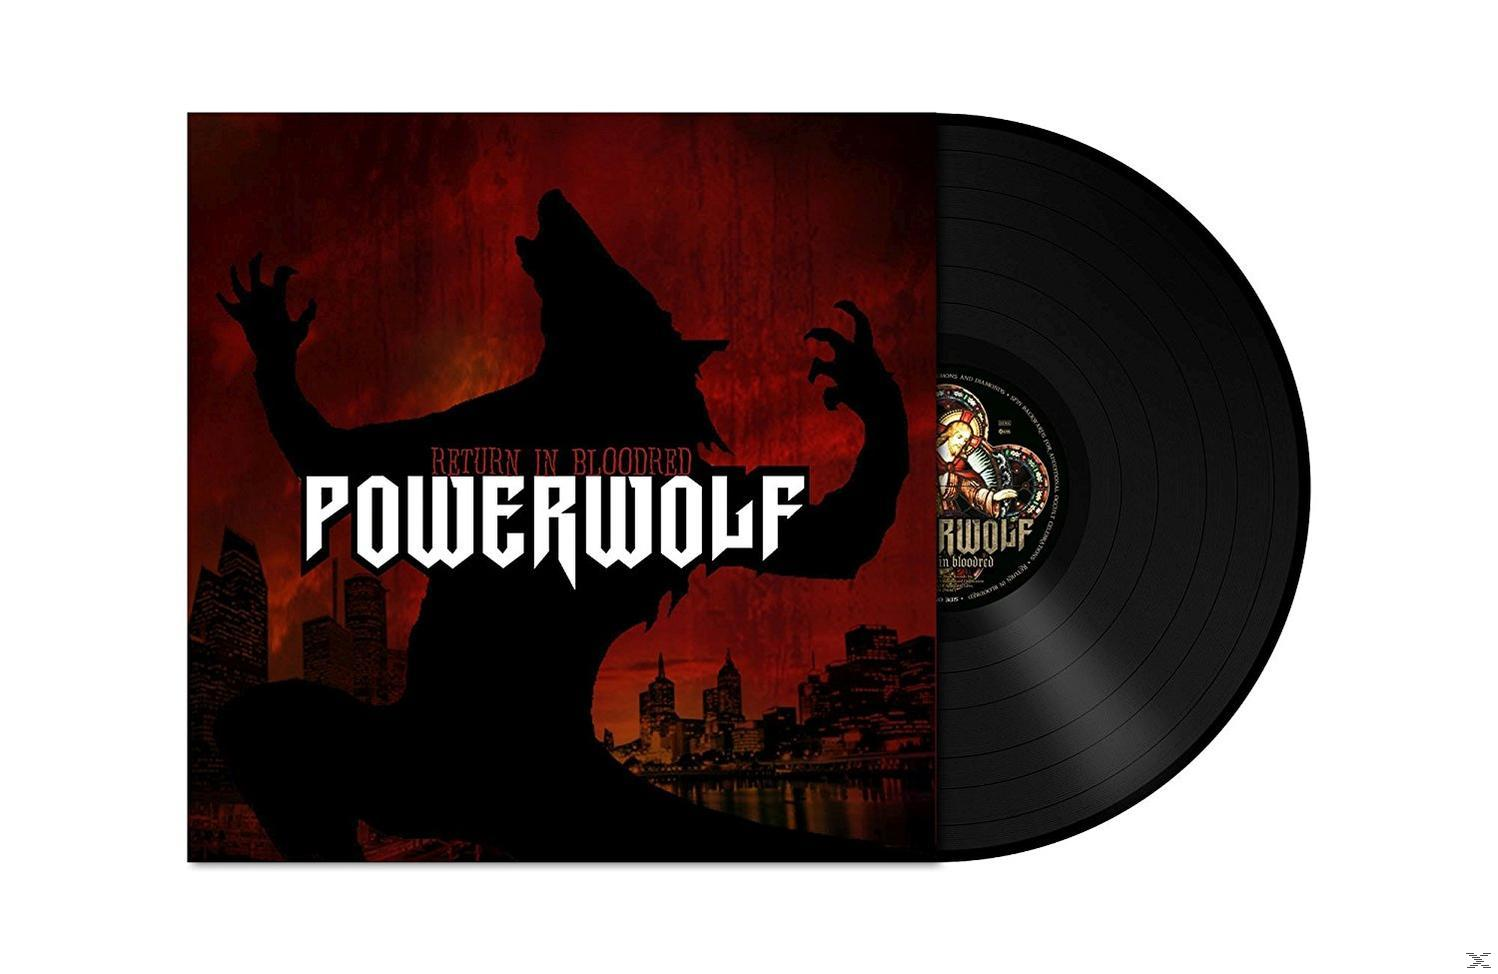 Return In (Vinyl) - Powerwolf - Bloodred